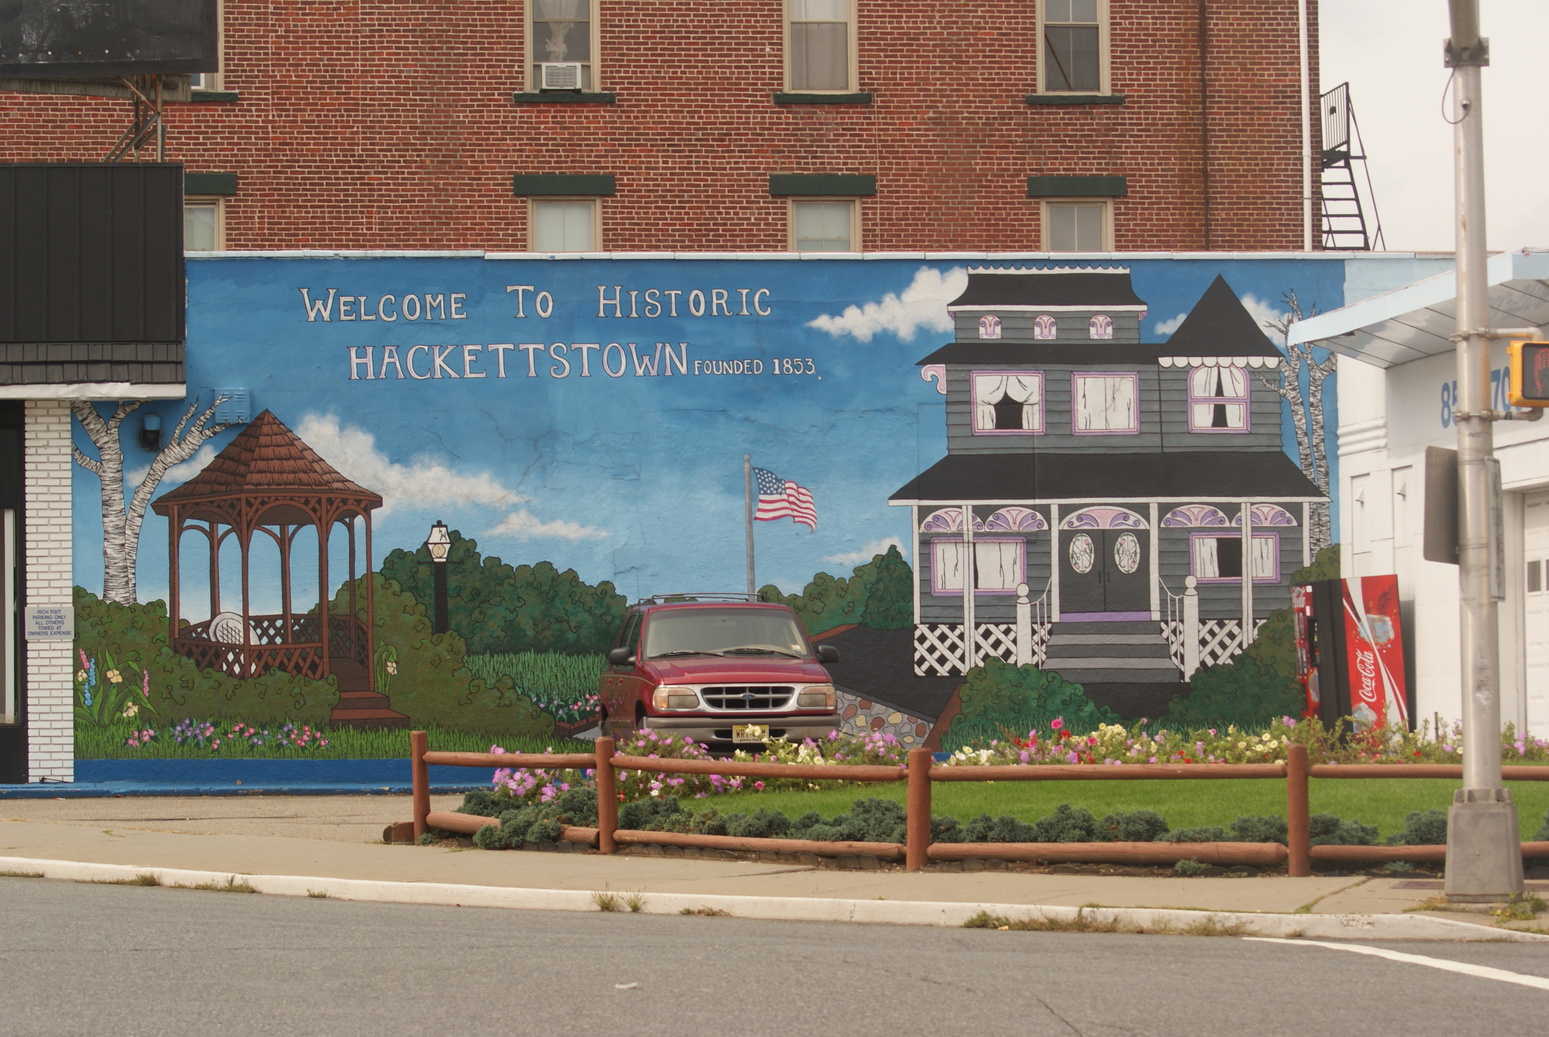 Hackettstown, NJ: Historic Hackettstown